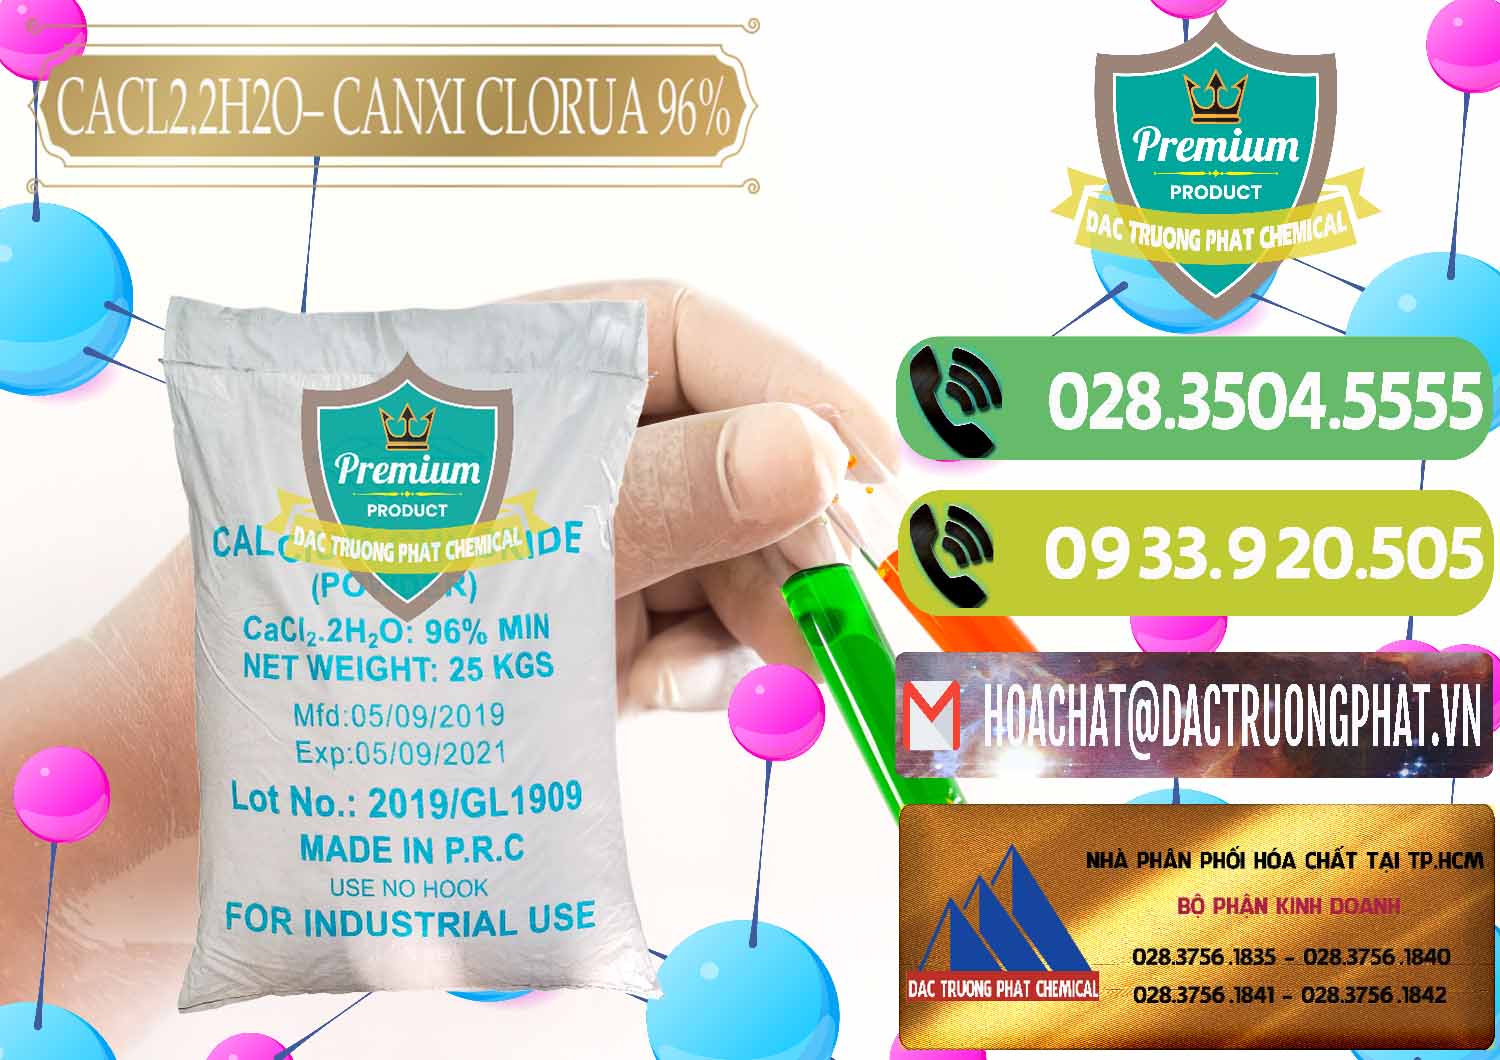 Cty bán ( cung ứng ) CaCl2 – Canxi Clorua 96% Logo Kim Cương Trung Quốc China - 0040 - Nơi phân phối _ cung cấp hóa chất tại TP.HCM - hoachatmientay.vn